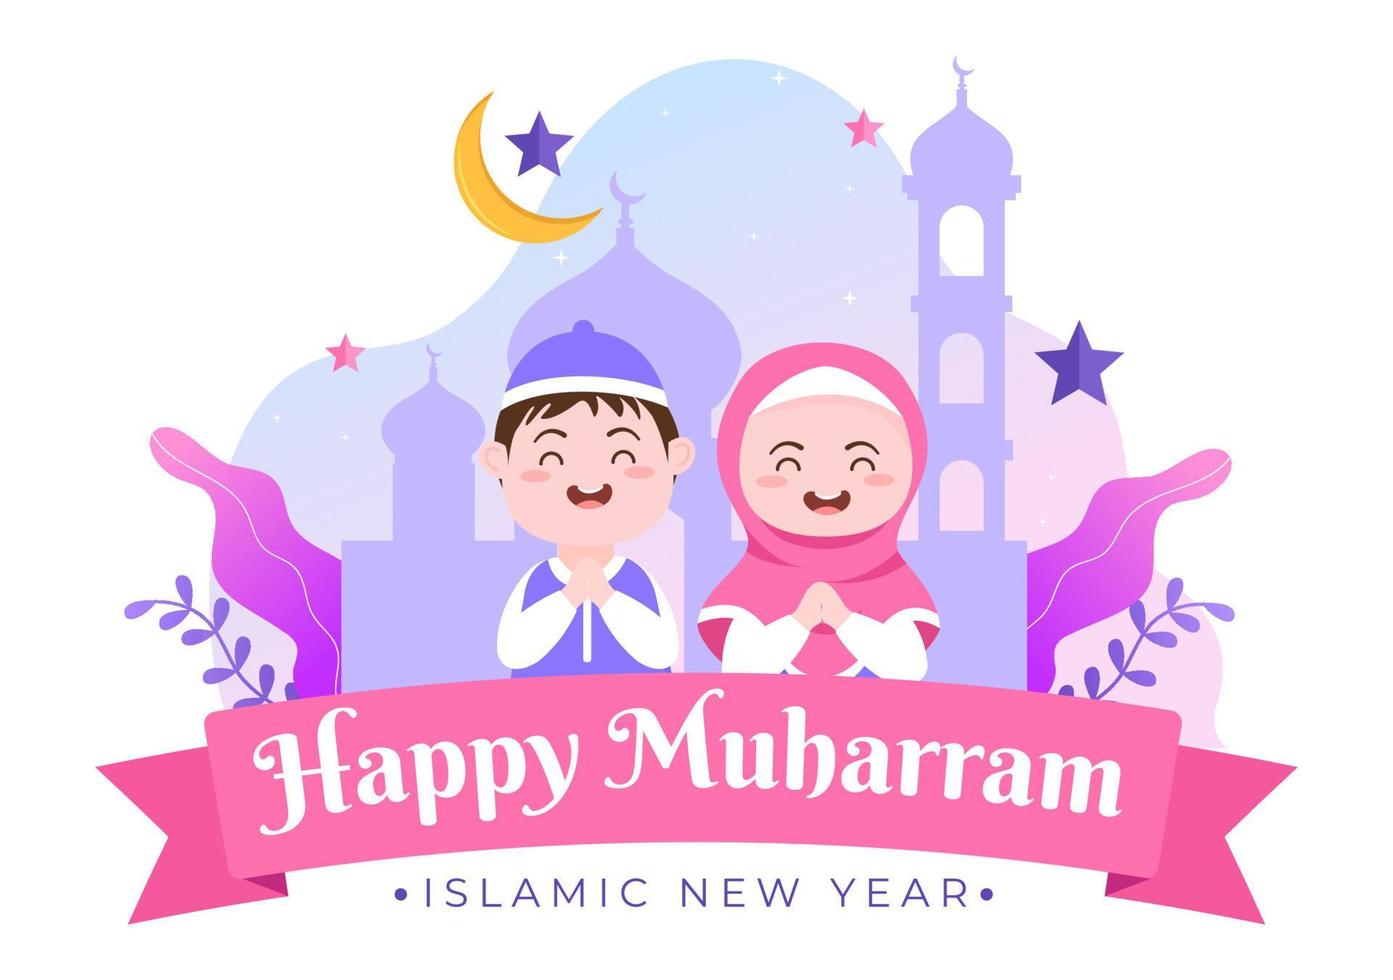 dia de ano novo islâmico ou 1 ilustração de fundo vetorial muharram da família muçulmana comemorando pode ser usado para cartão ou convite vetor